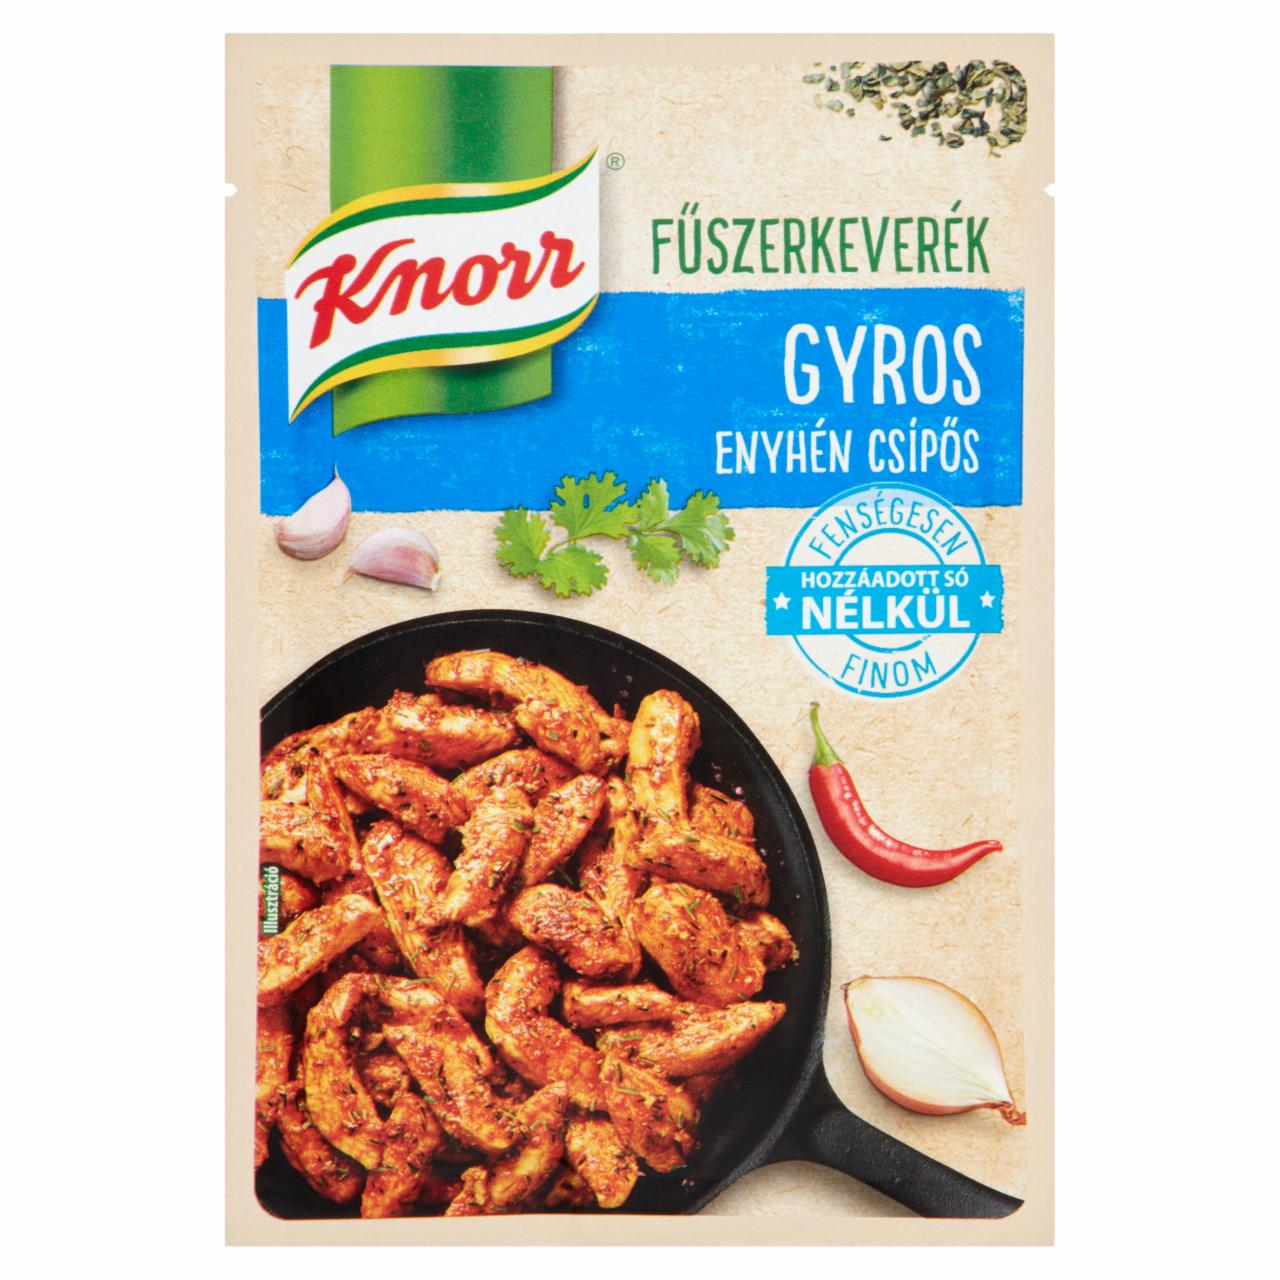 Képek - Knorr enyhén csípős gyros fűszerkeverék 25 g